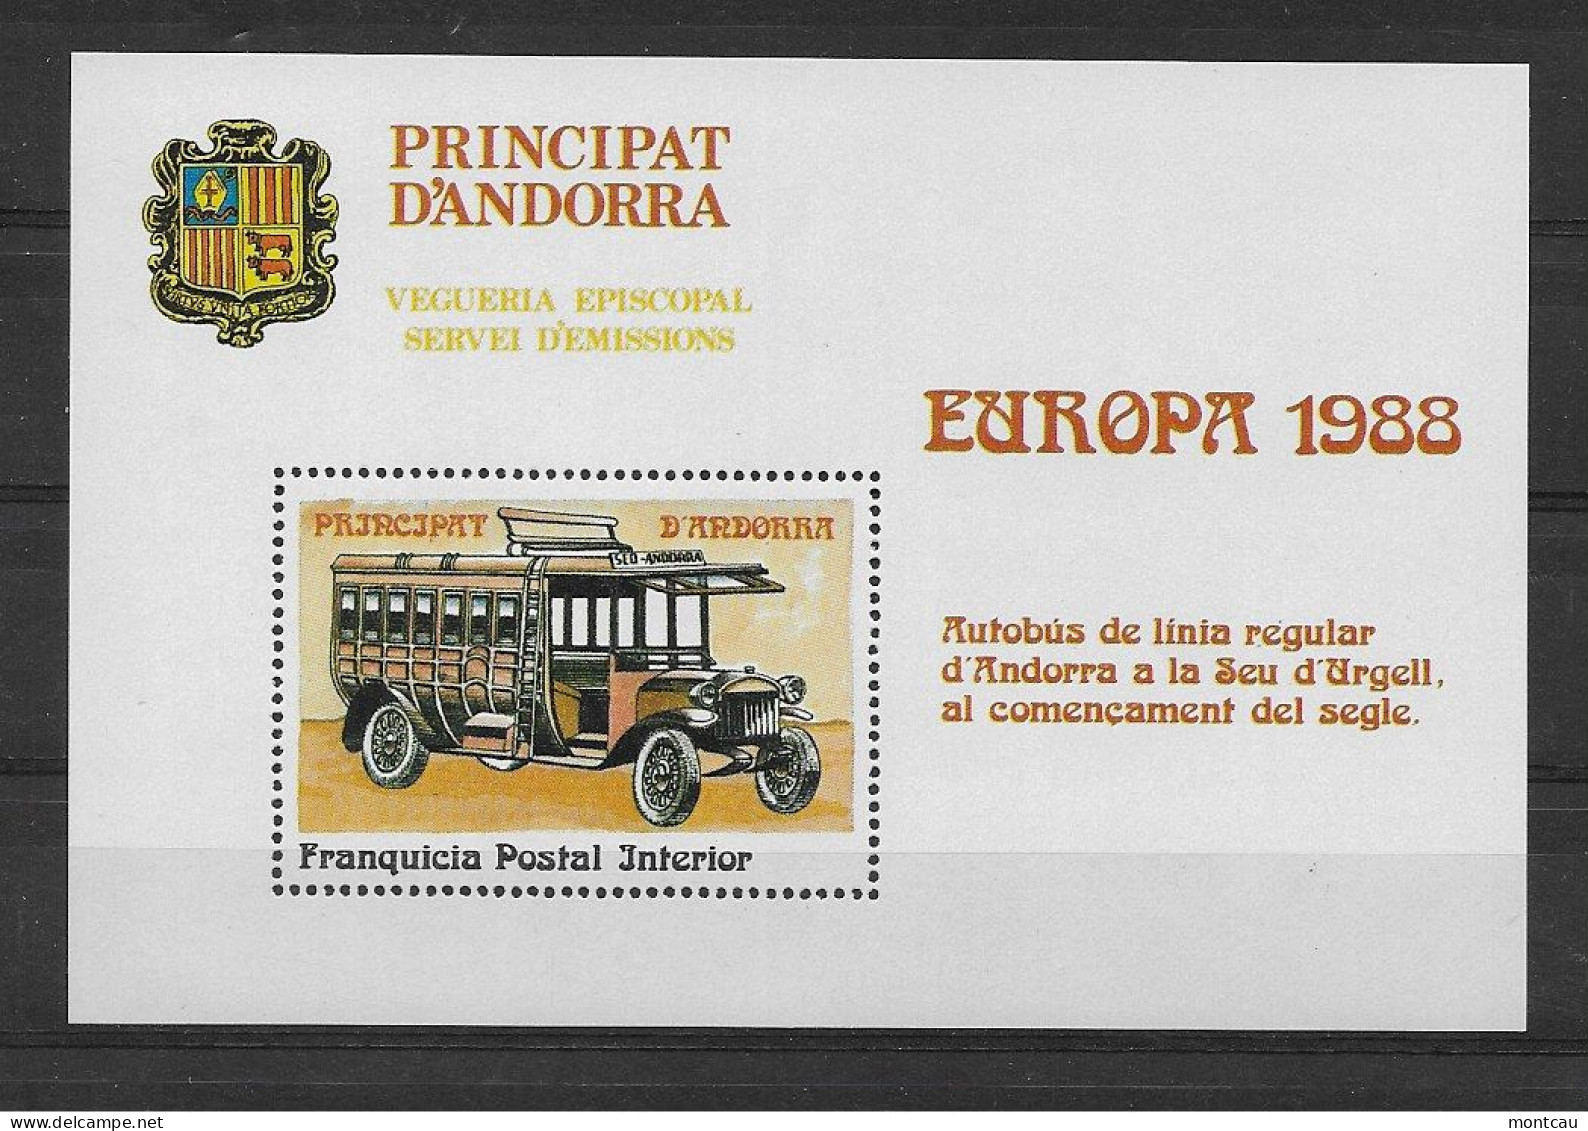 Andorra - 1988 - Vegueria Episcopal Europa - Bischöfliche Viguerie